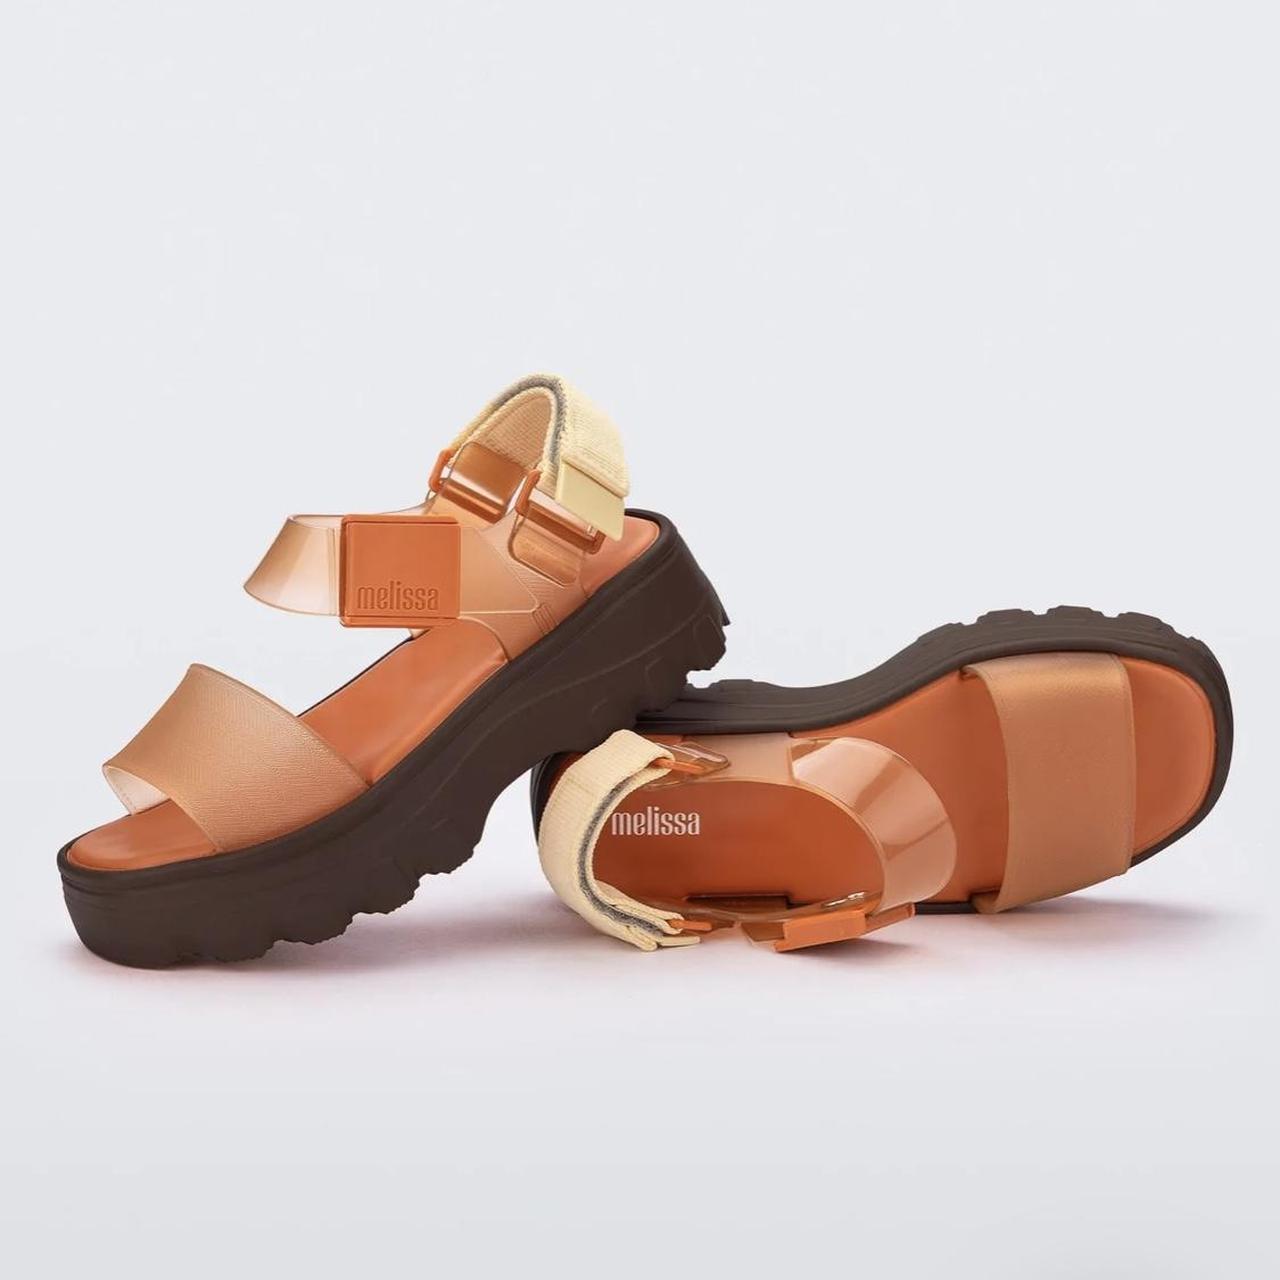 Melissa Women's Brown and Orange Sandals (3)